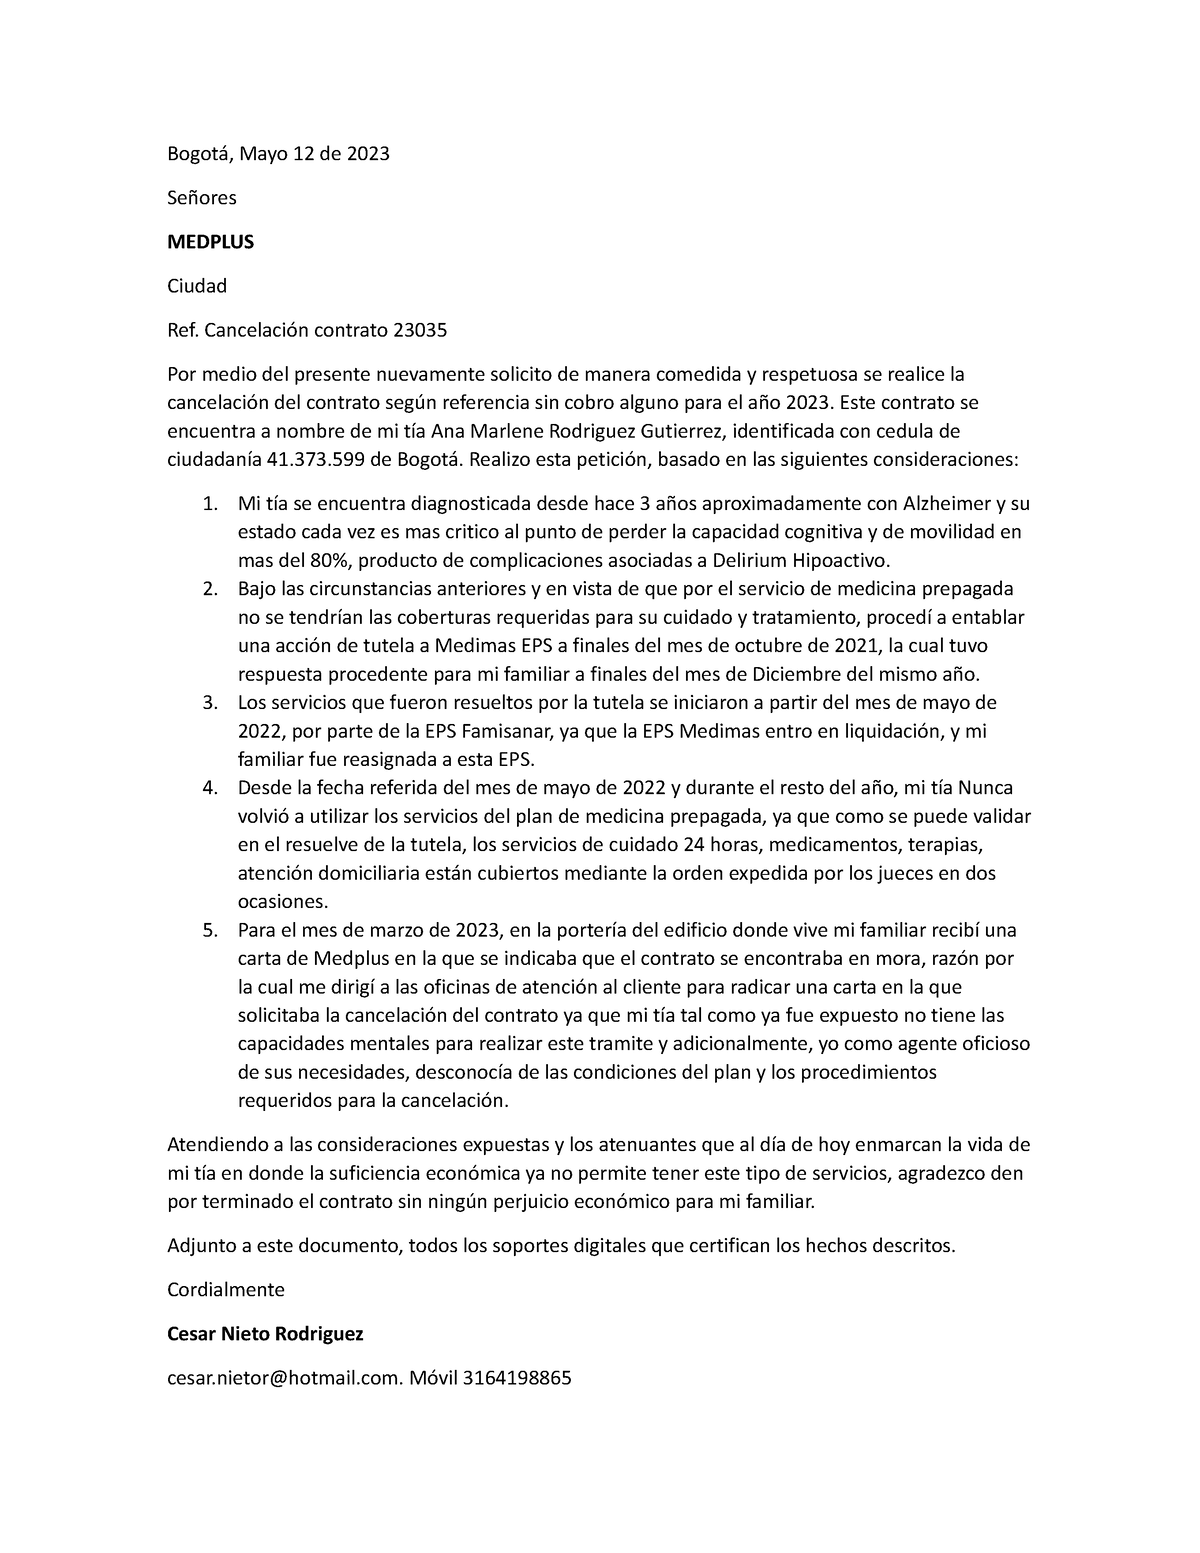 Carta medplus cancelación 2 - Bogotá, Mayo 12 de 2023 Señores MEDPLUS ...